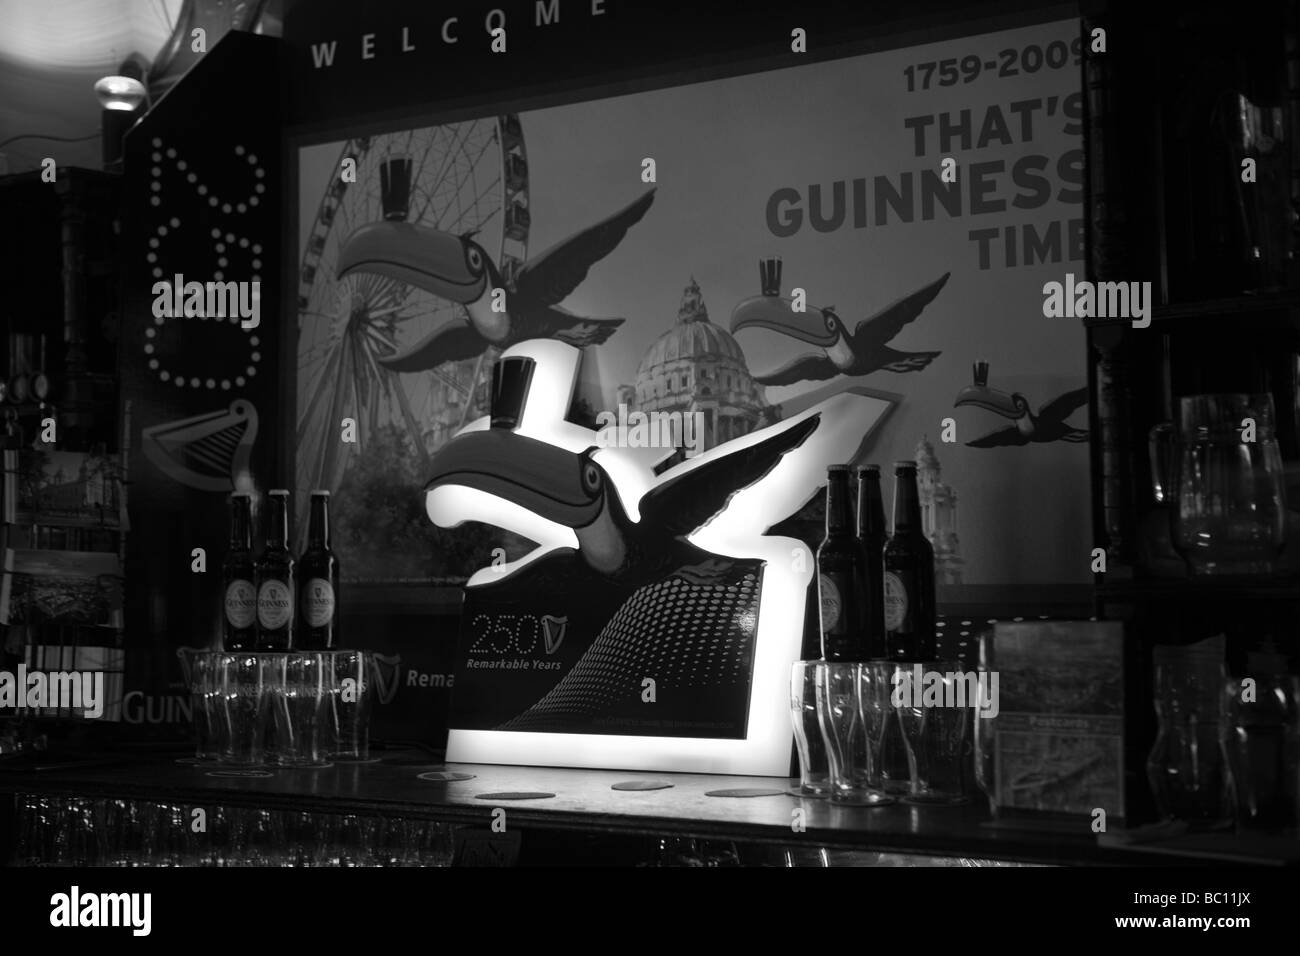 Die Guinness-Zeituhr mit dem Rad, dem Rathaus, in einem Pub, Belfast, Nordirland, Vereinigtes Königreich, UK, GB Stockfoto